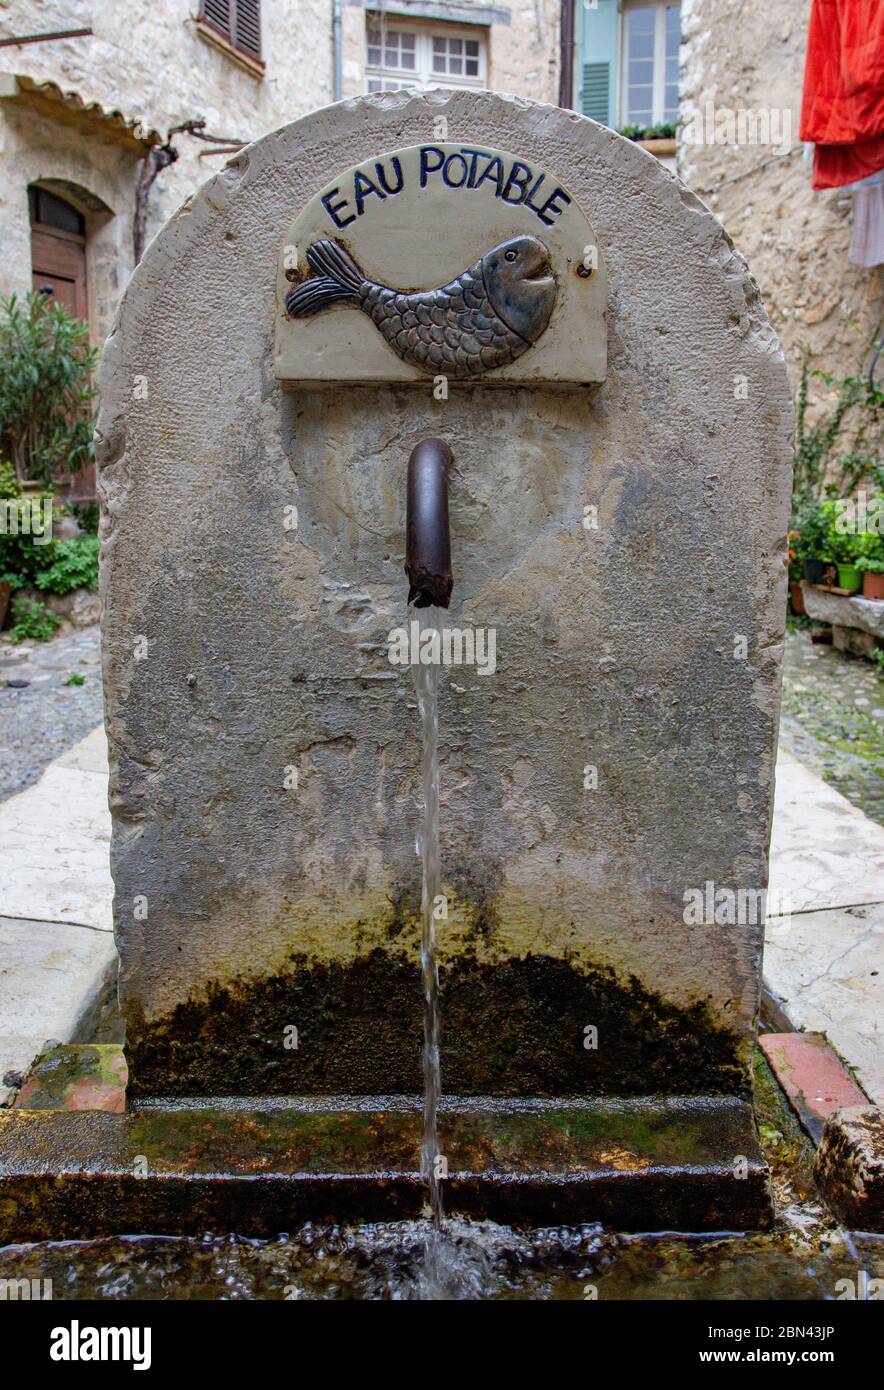 Una vecchia fontana, denominata 'EAU POTABLE' (acqua potabile), con un'immagine di un pesce, distribuisce l'acqua nella città di Saint-Paul-de-Vence, Francia Foto Stock